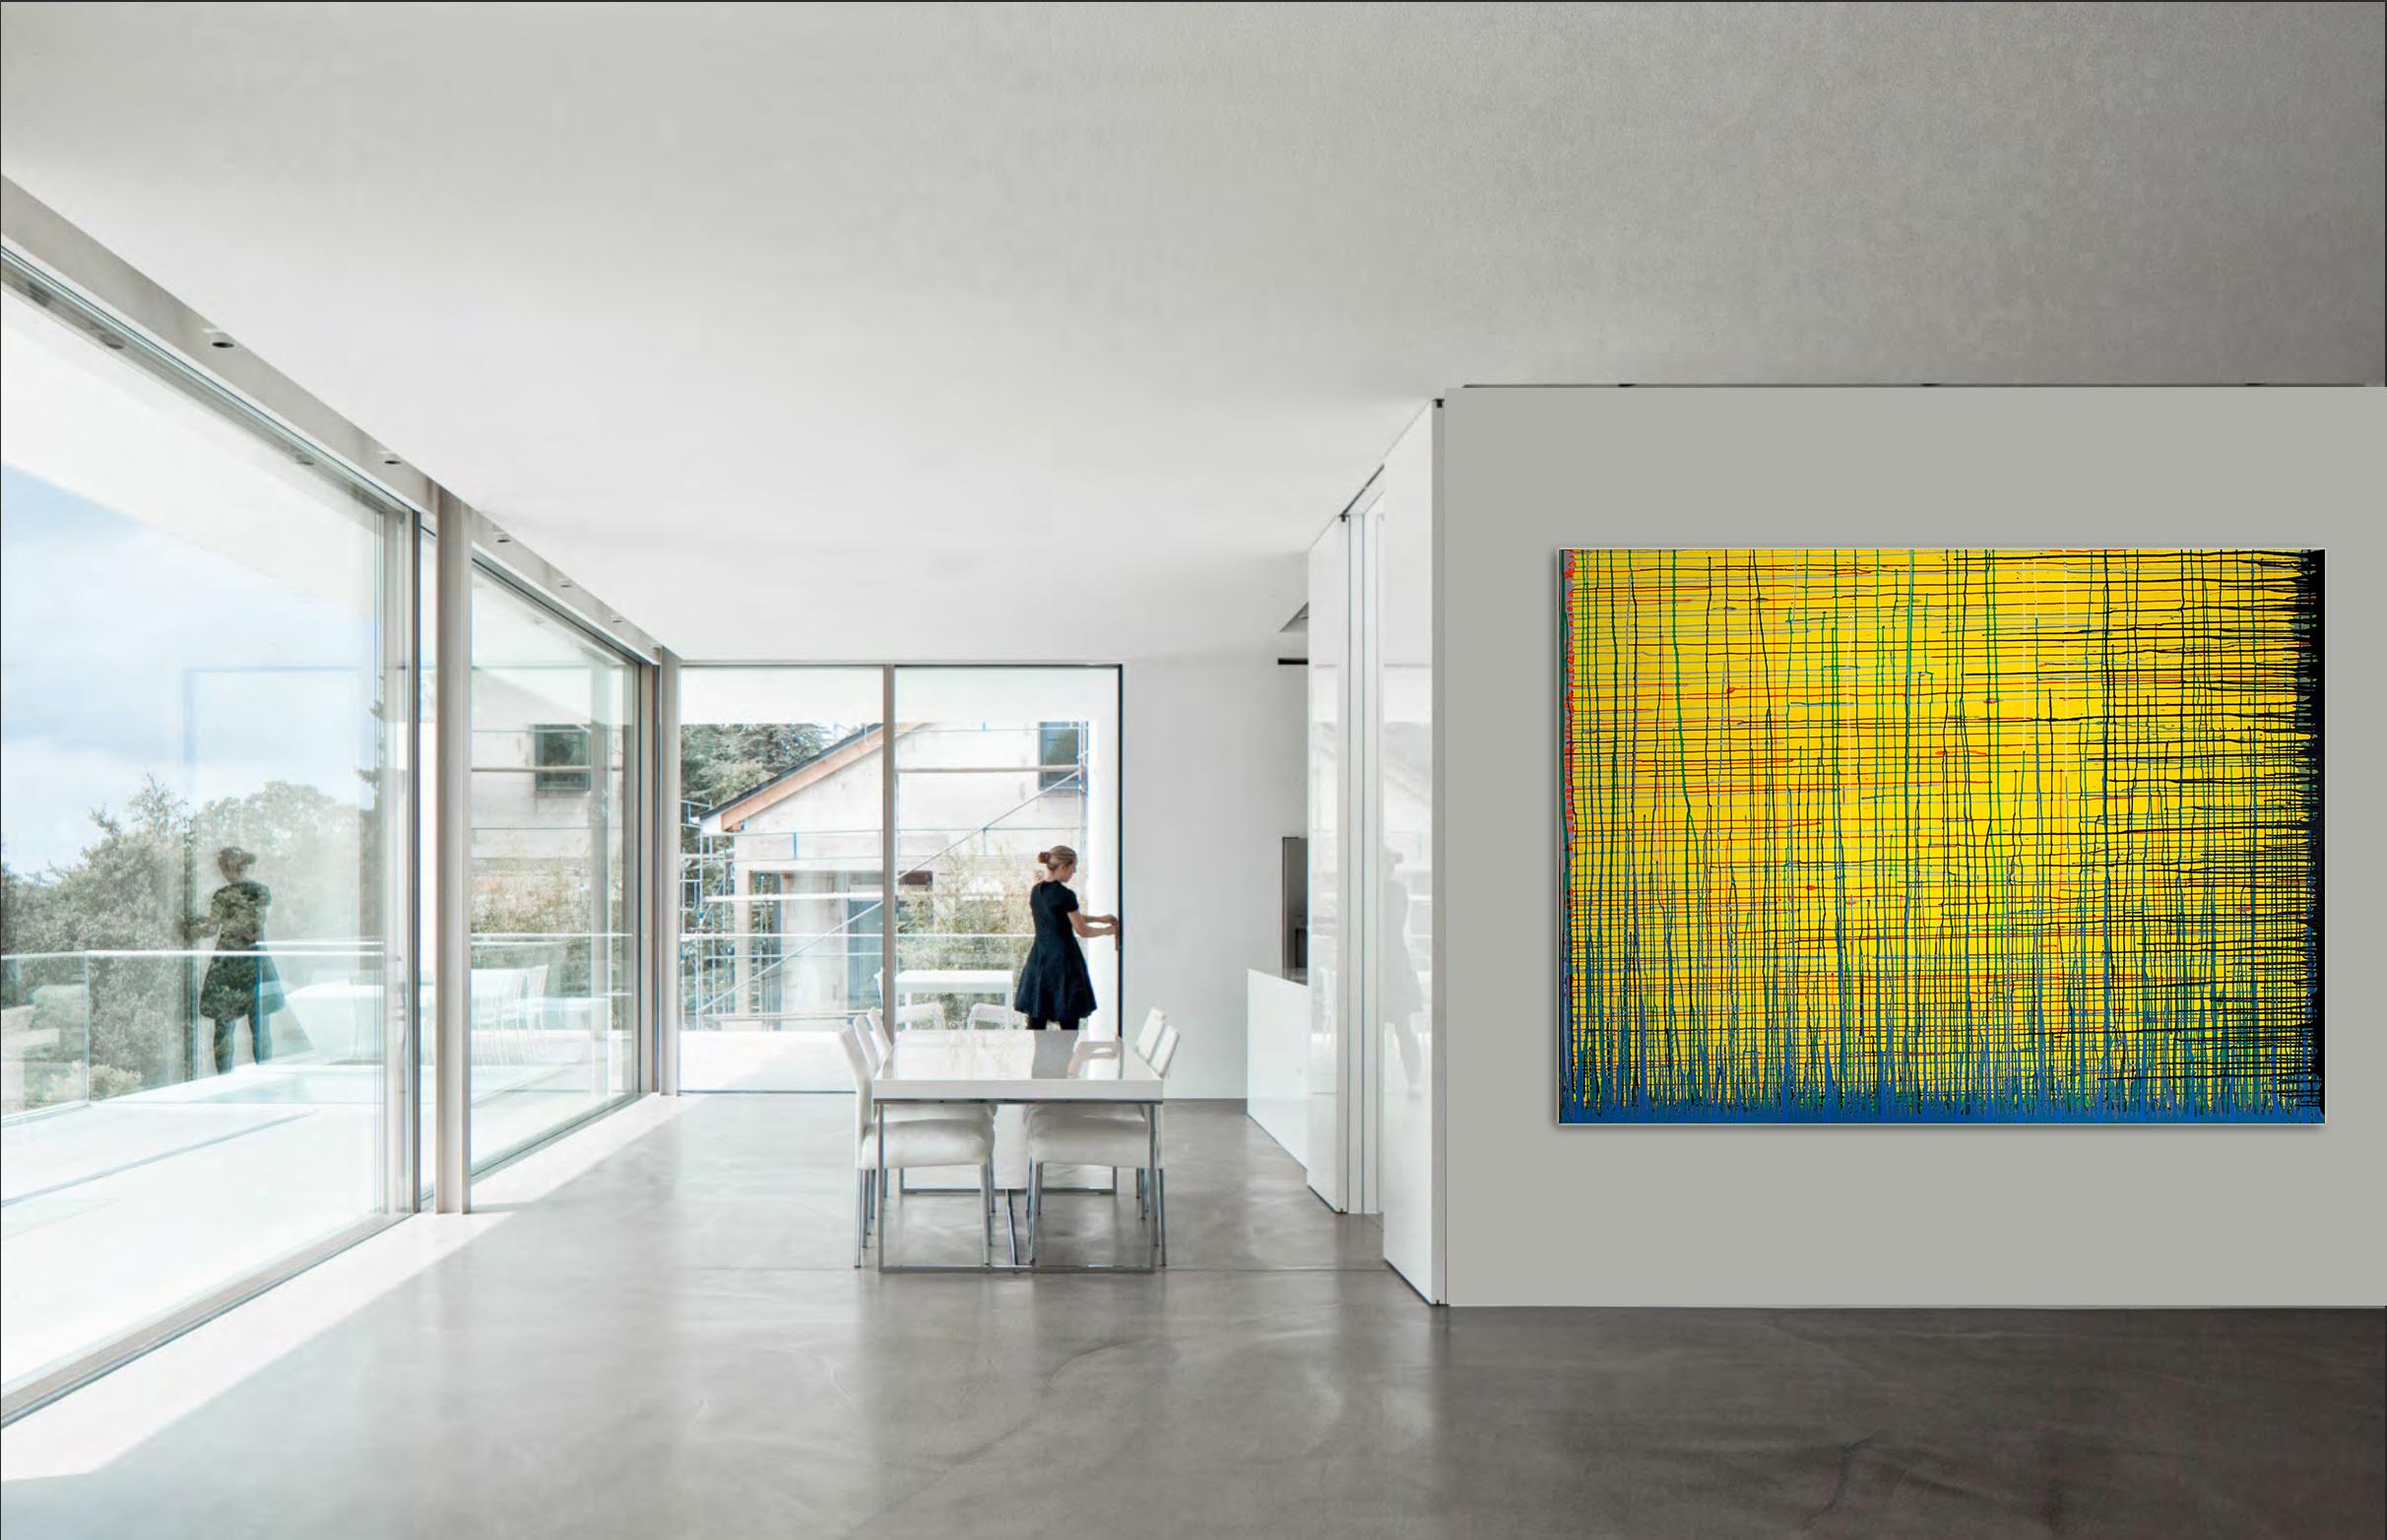 Flow Number1 von Detlef Aderhold - Großes zeitgenössisches abstraktes Gemälde, energiegeladen – Painting von Detlef E. Aderhold